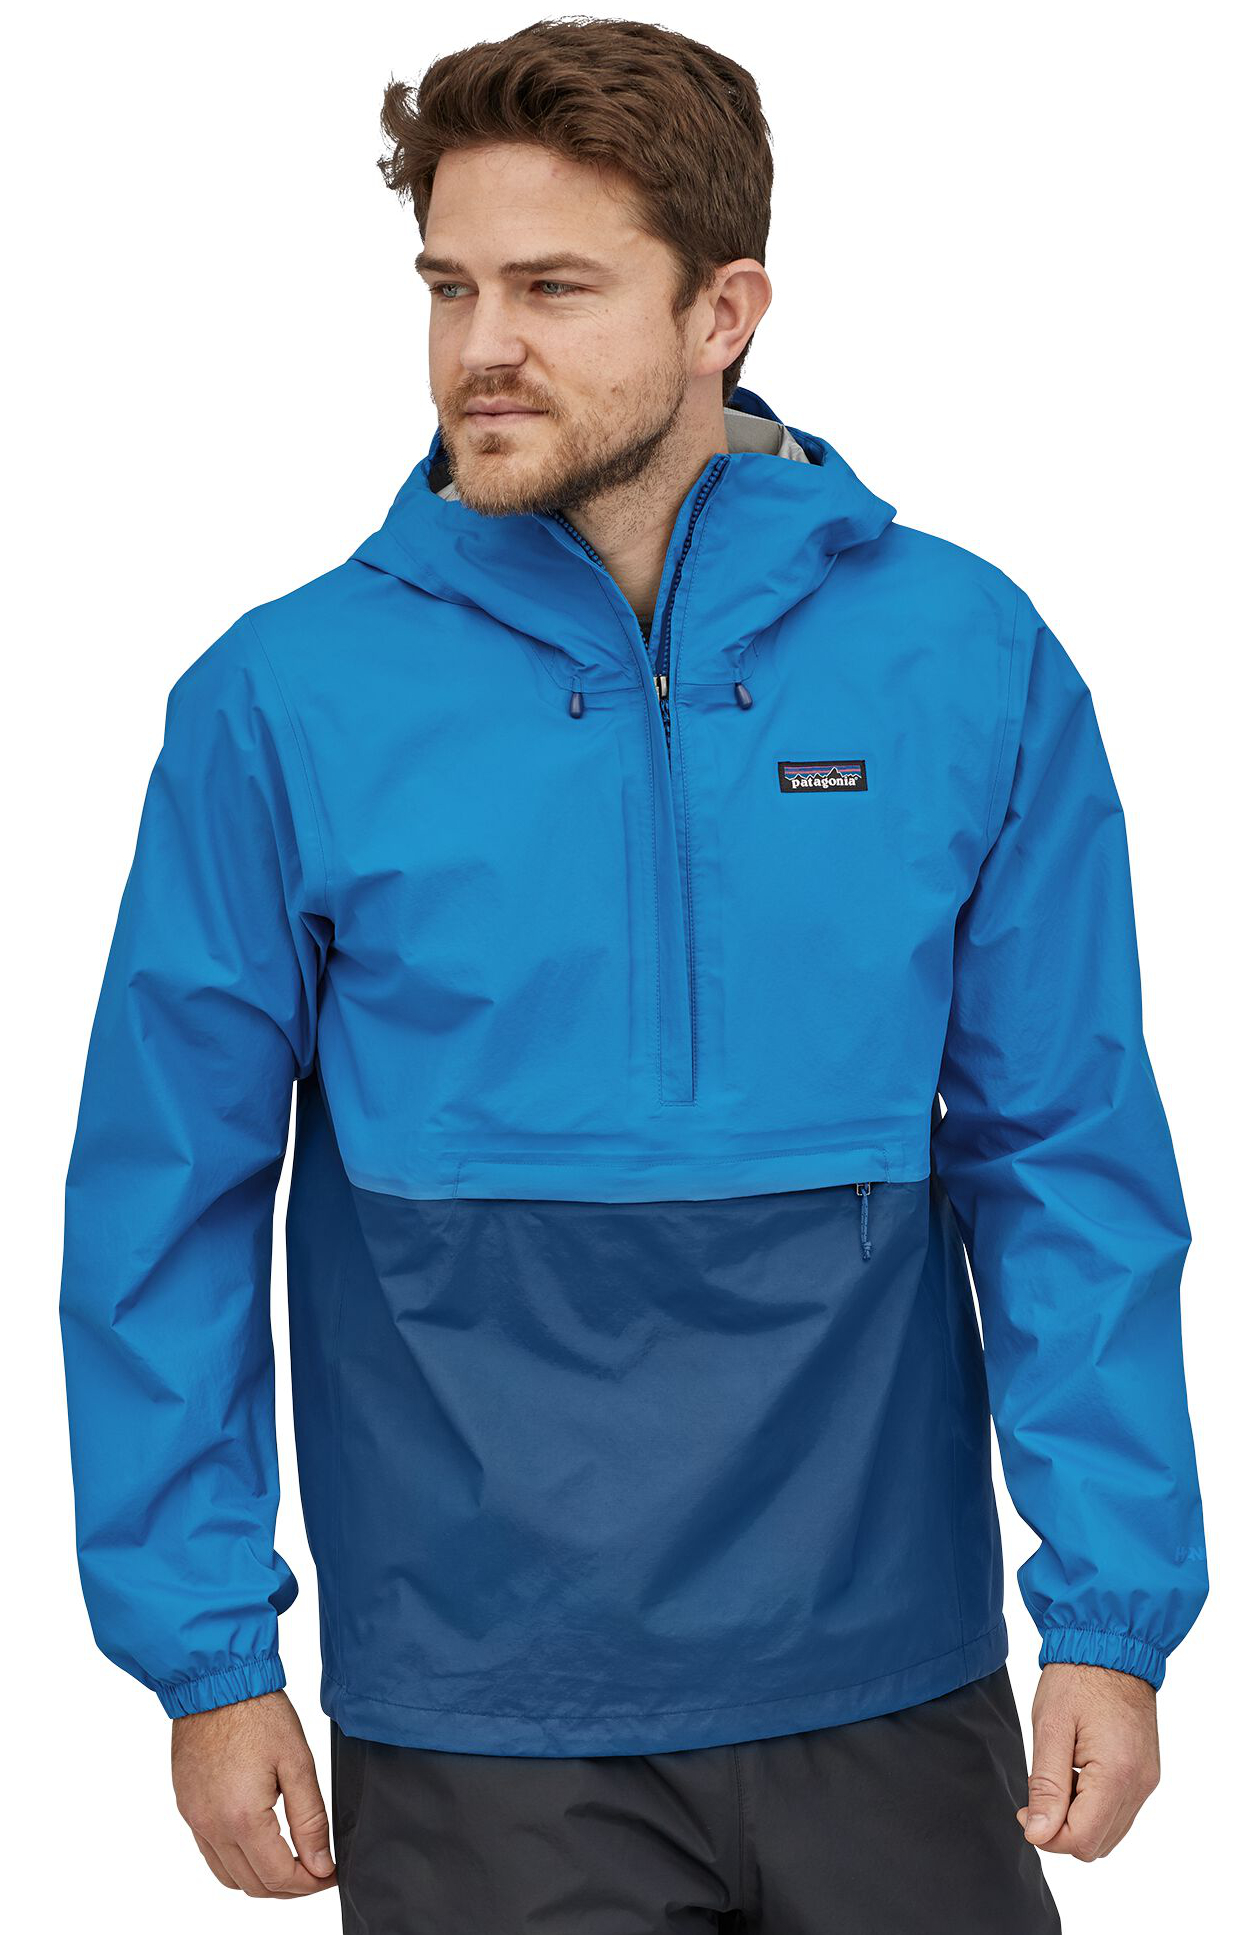 Patagonia Torrentshell 3L Pullover Waterproof Jacket